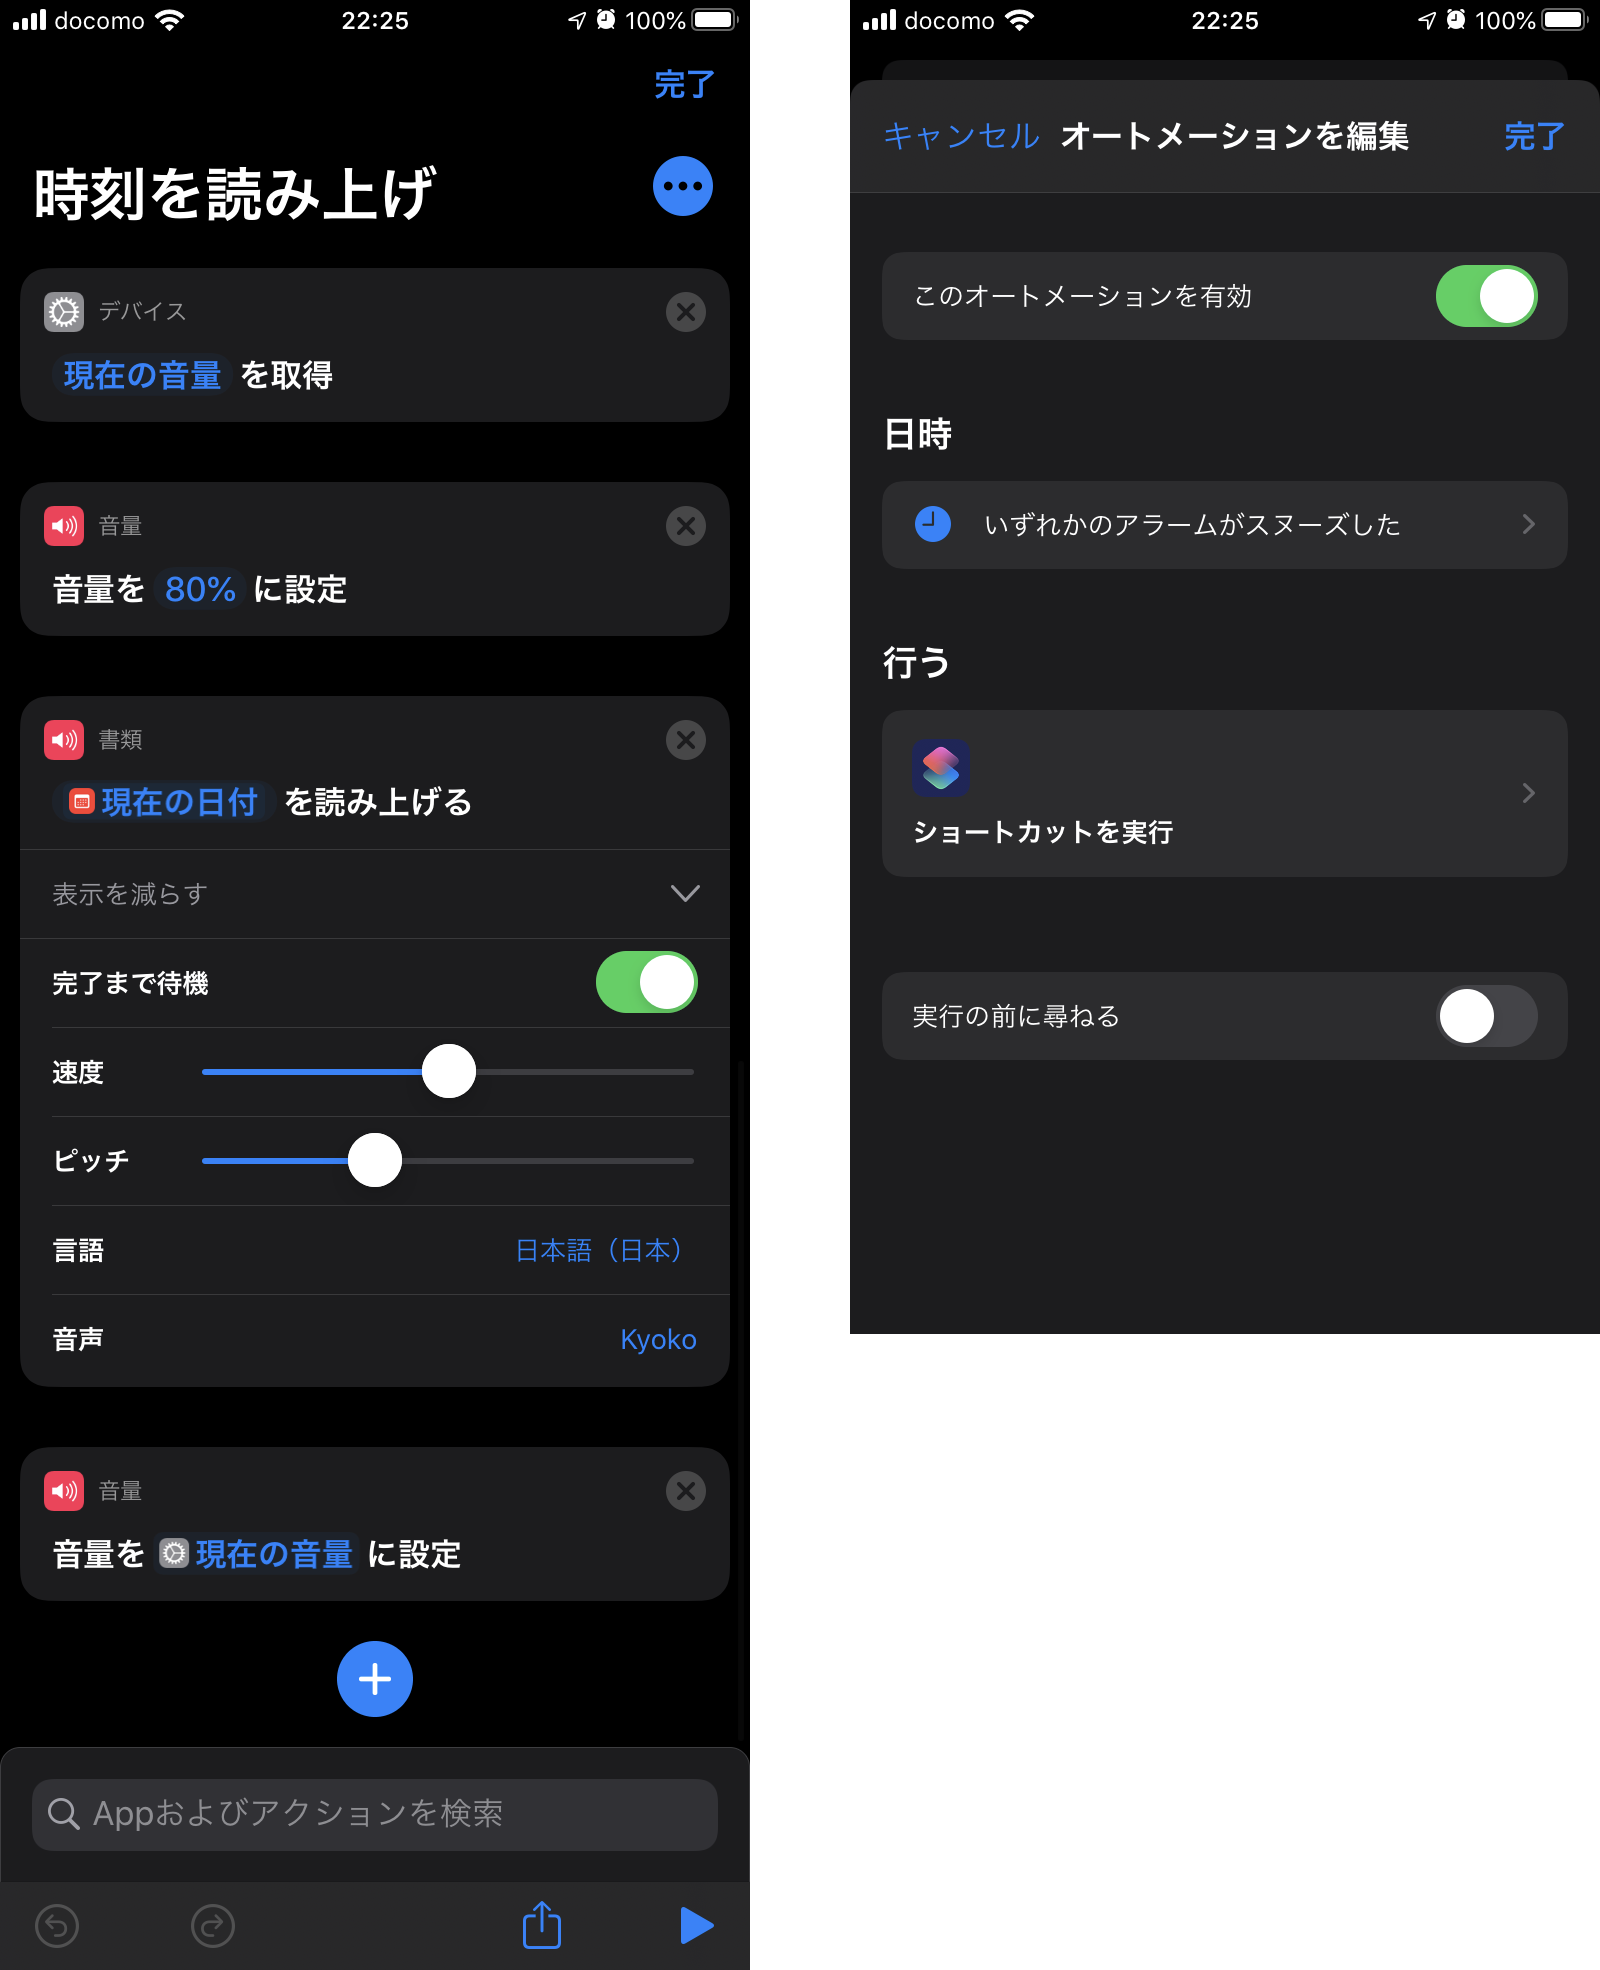 Iosのアラームがスヌーズ 停止した時に時刻を読み上げるオートメーションを作る Genji App Blog